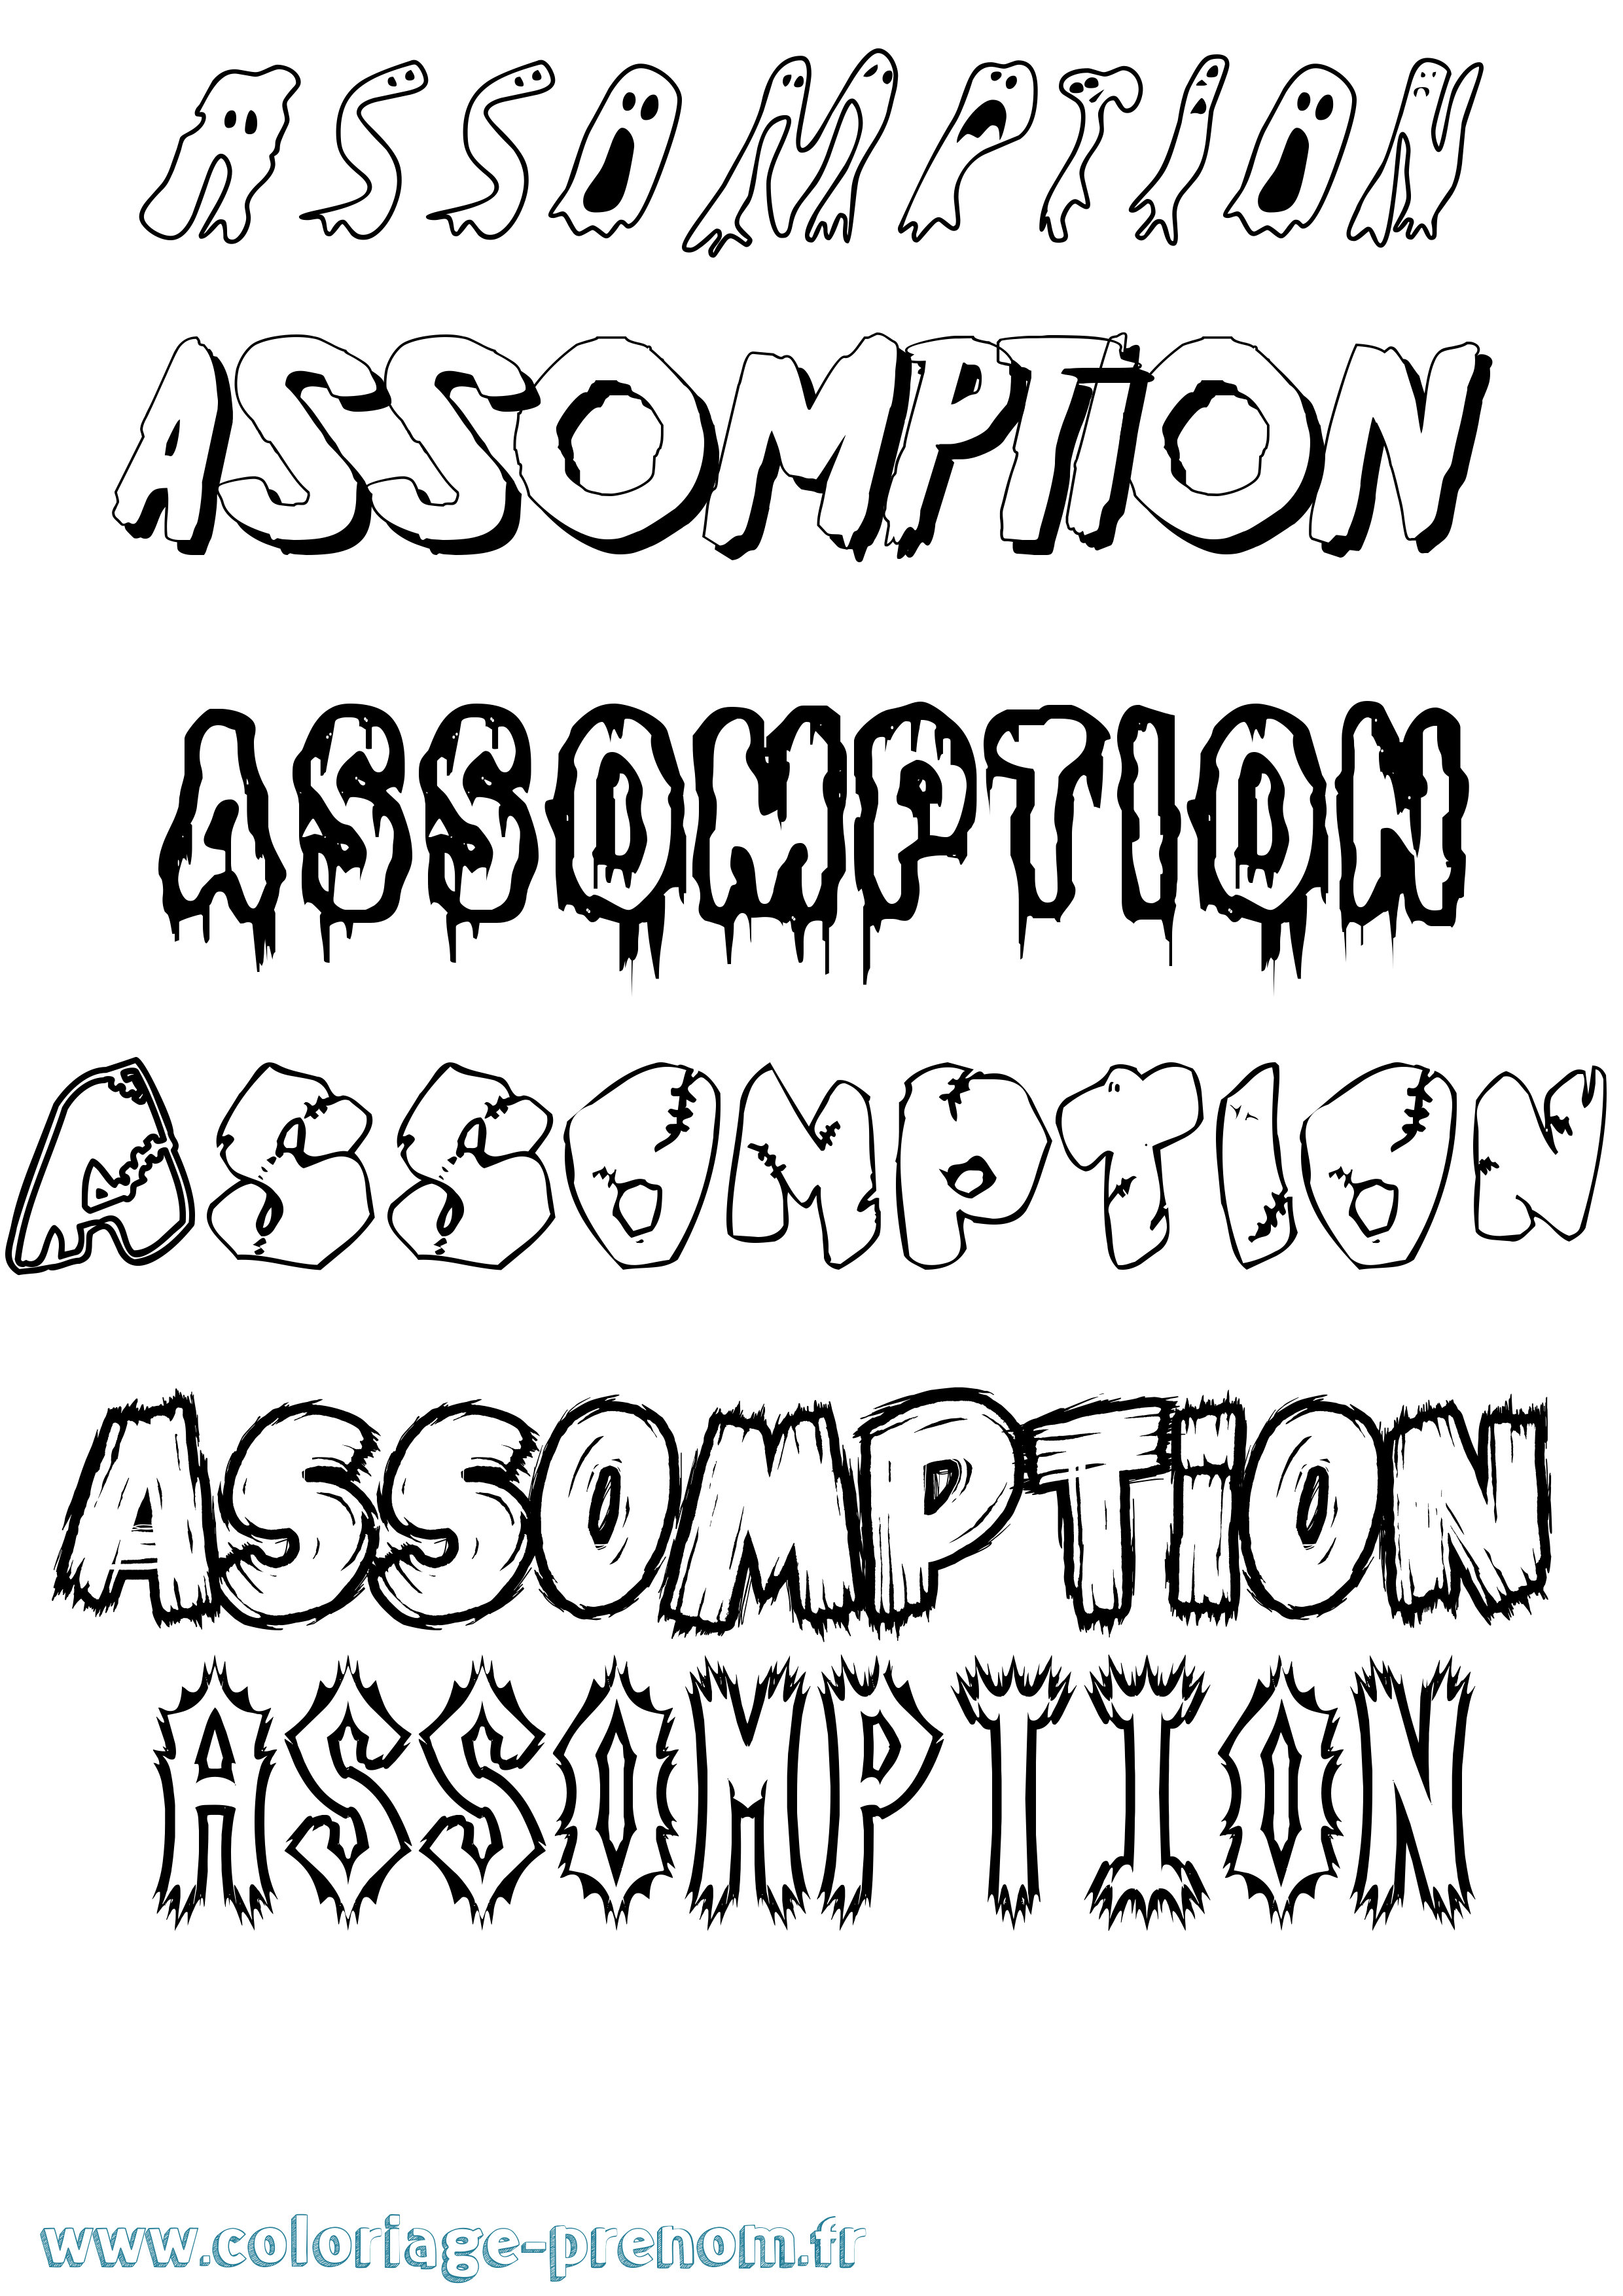 Coloriage prénom Assomption Frisson